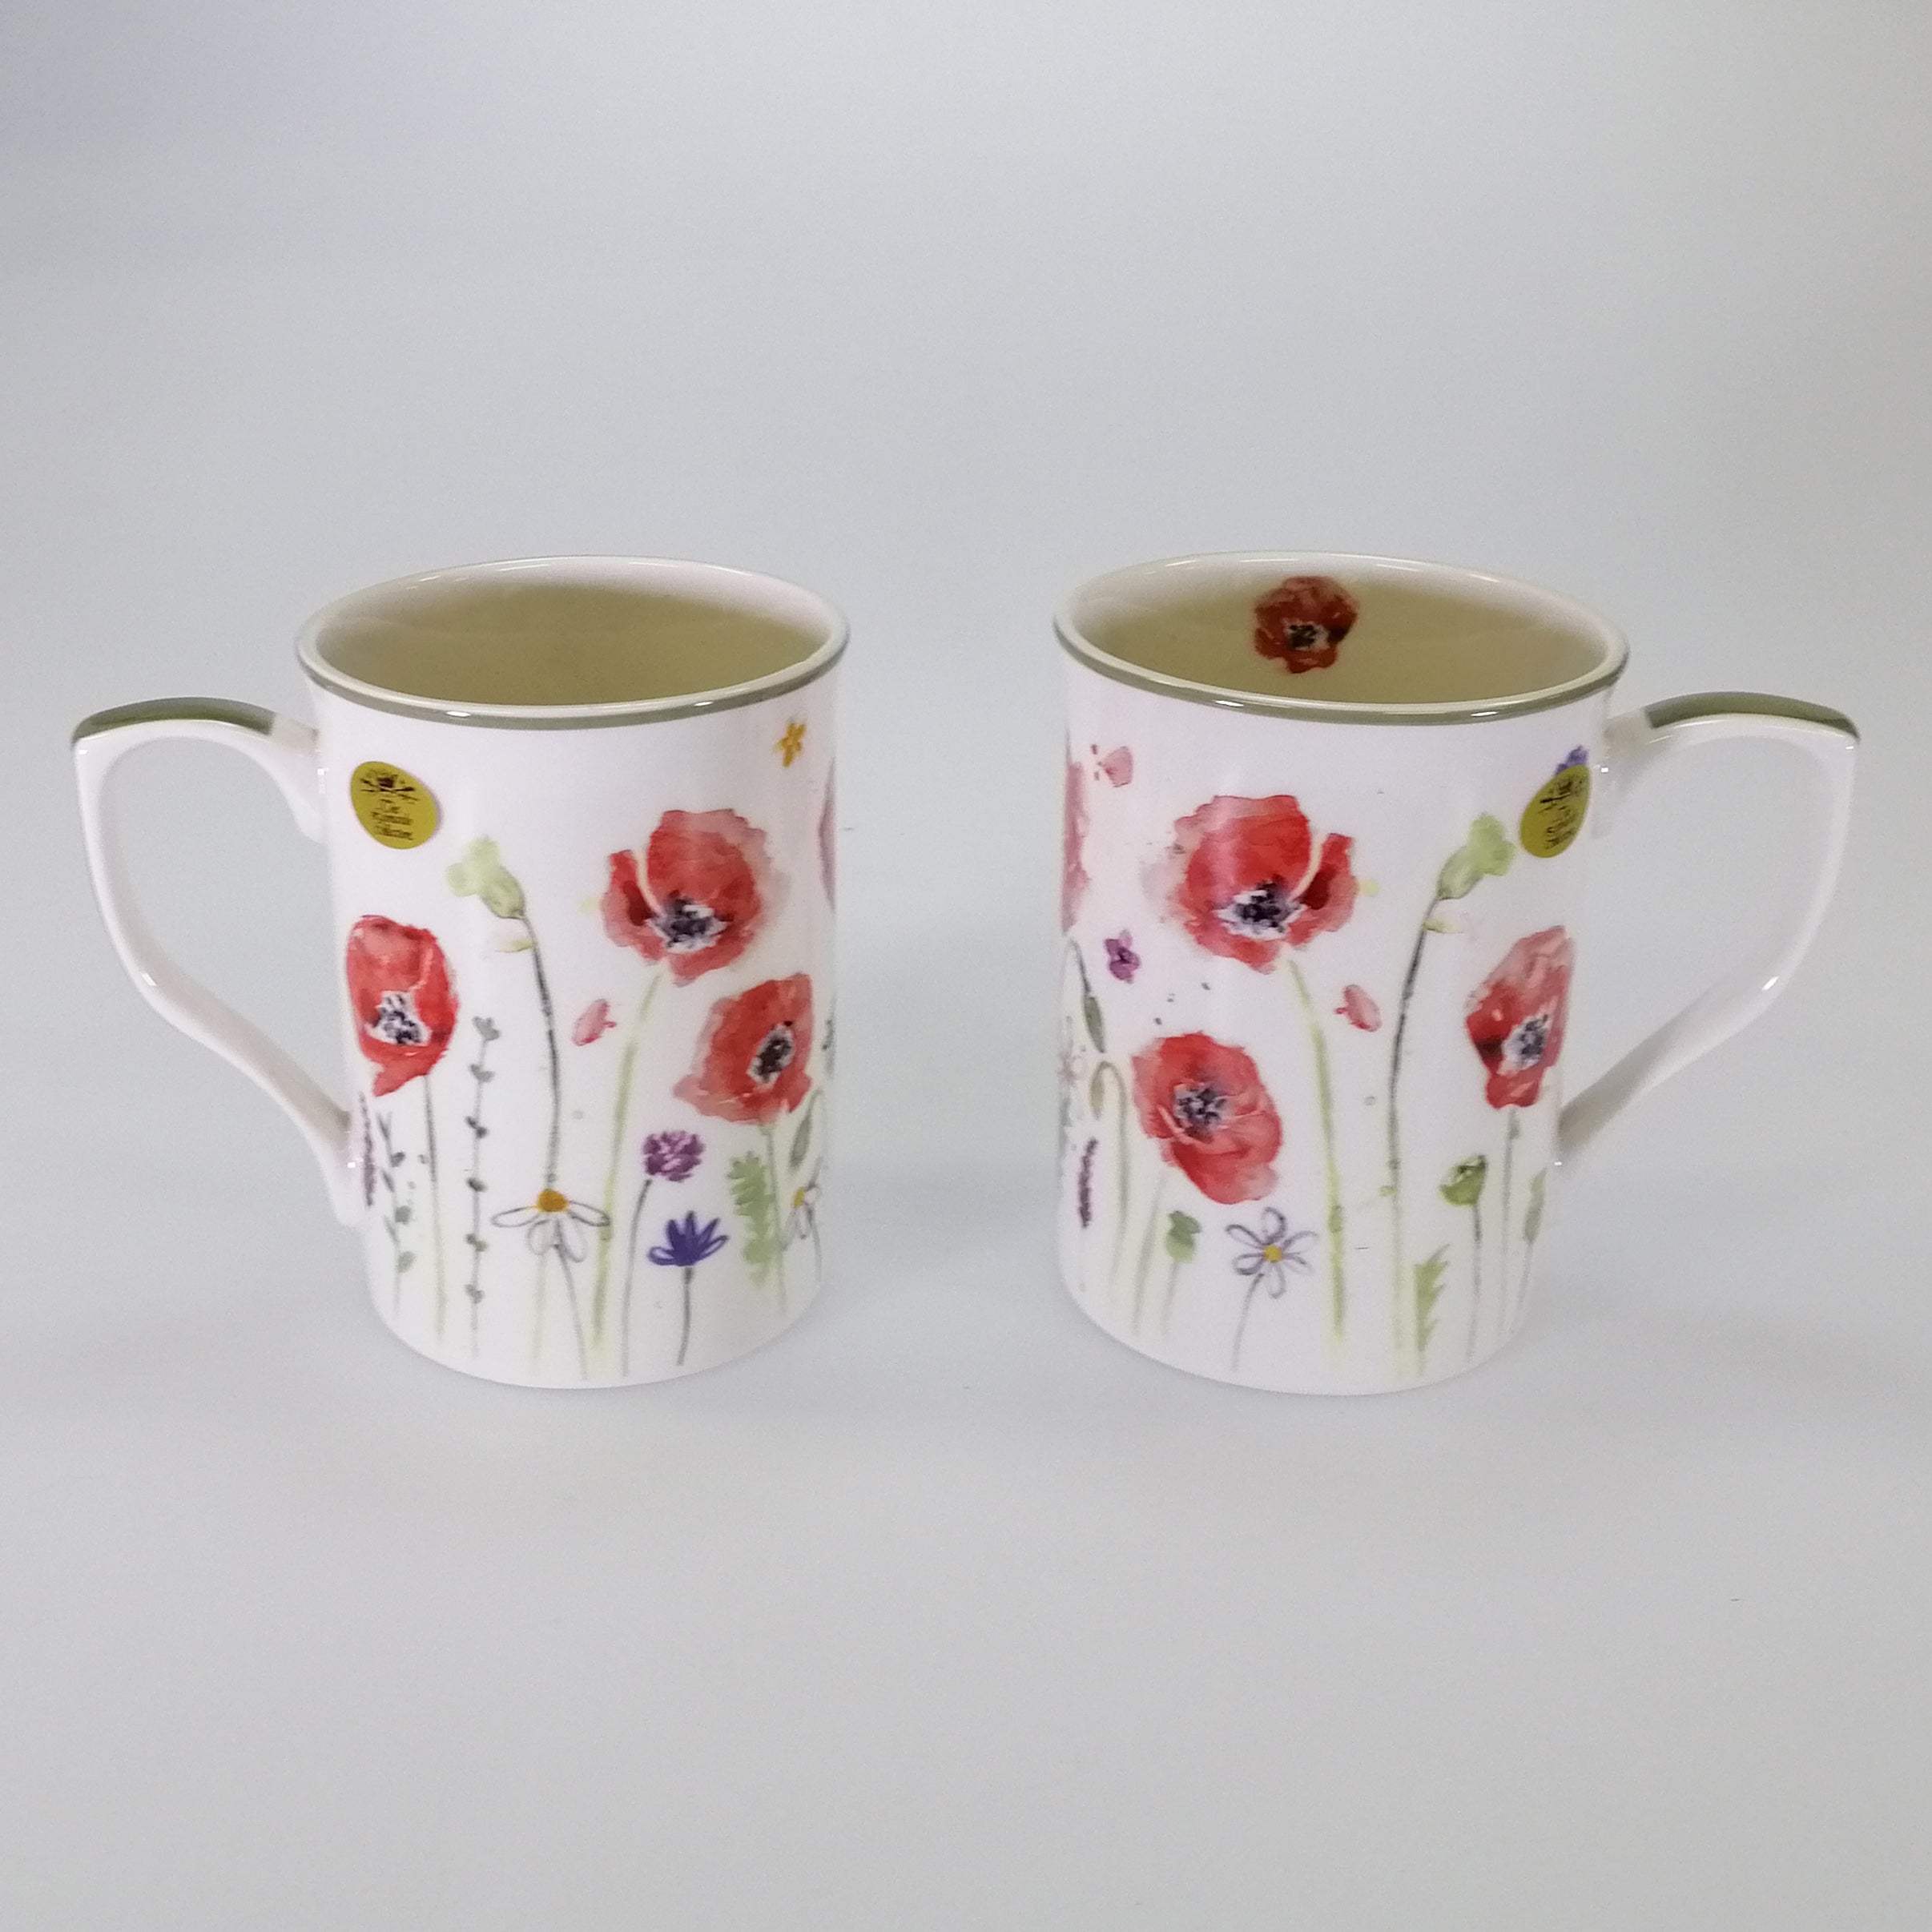 Poppy Fields Mug - Set of 2